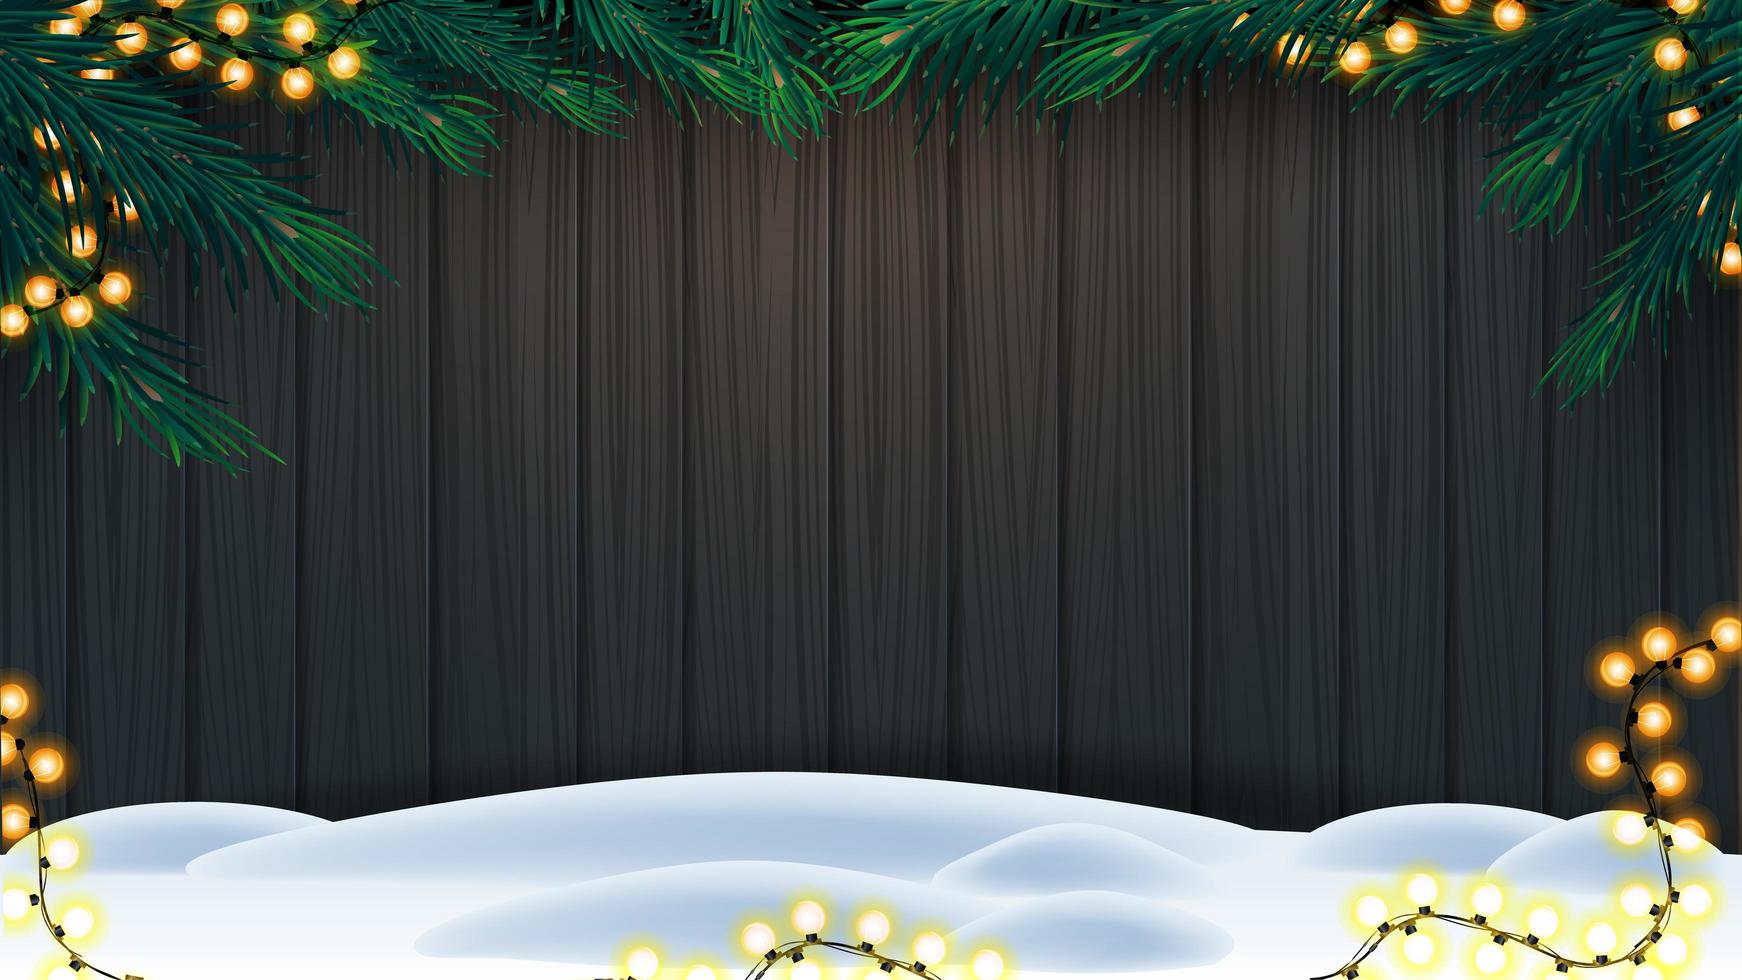 jul bakgrund, trästaket av brädor med ram av julgranfilialer, krans av gula glödlampor och snö på golvet vektor